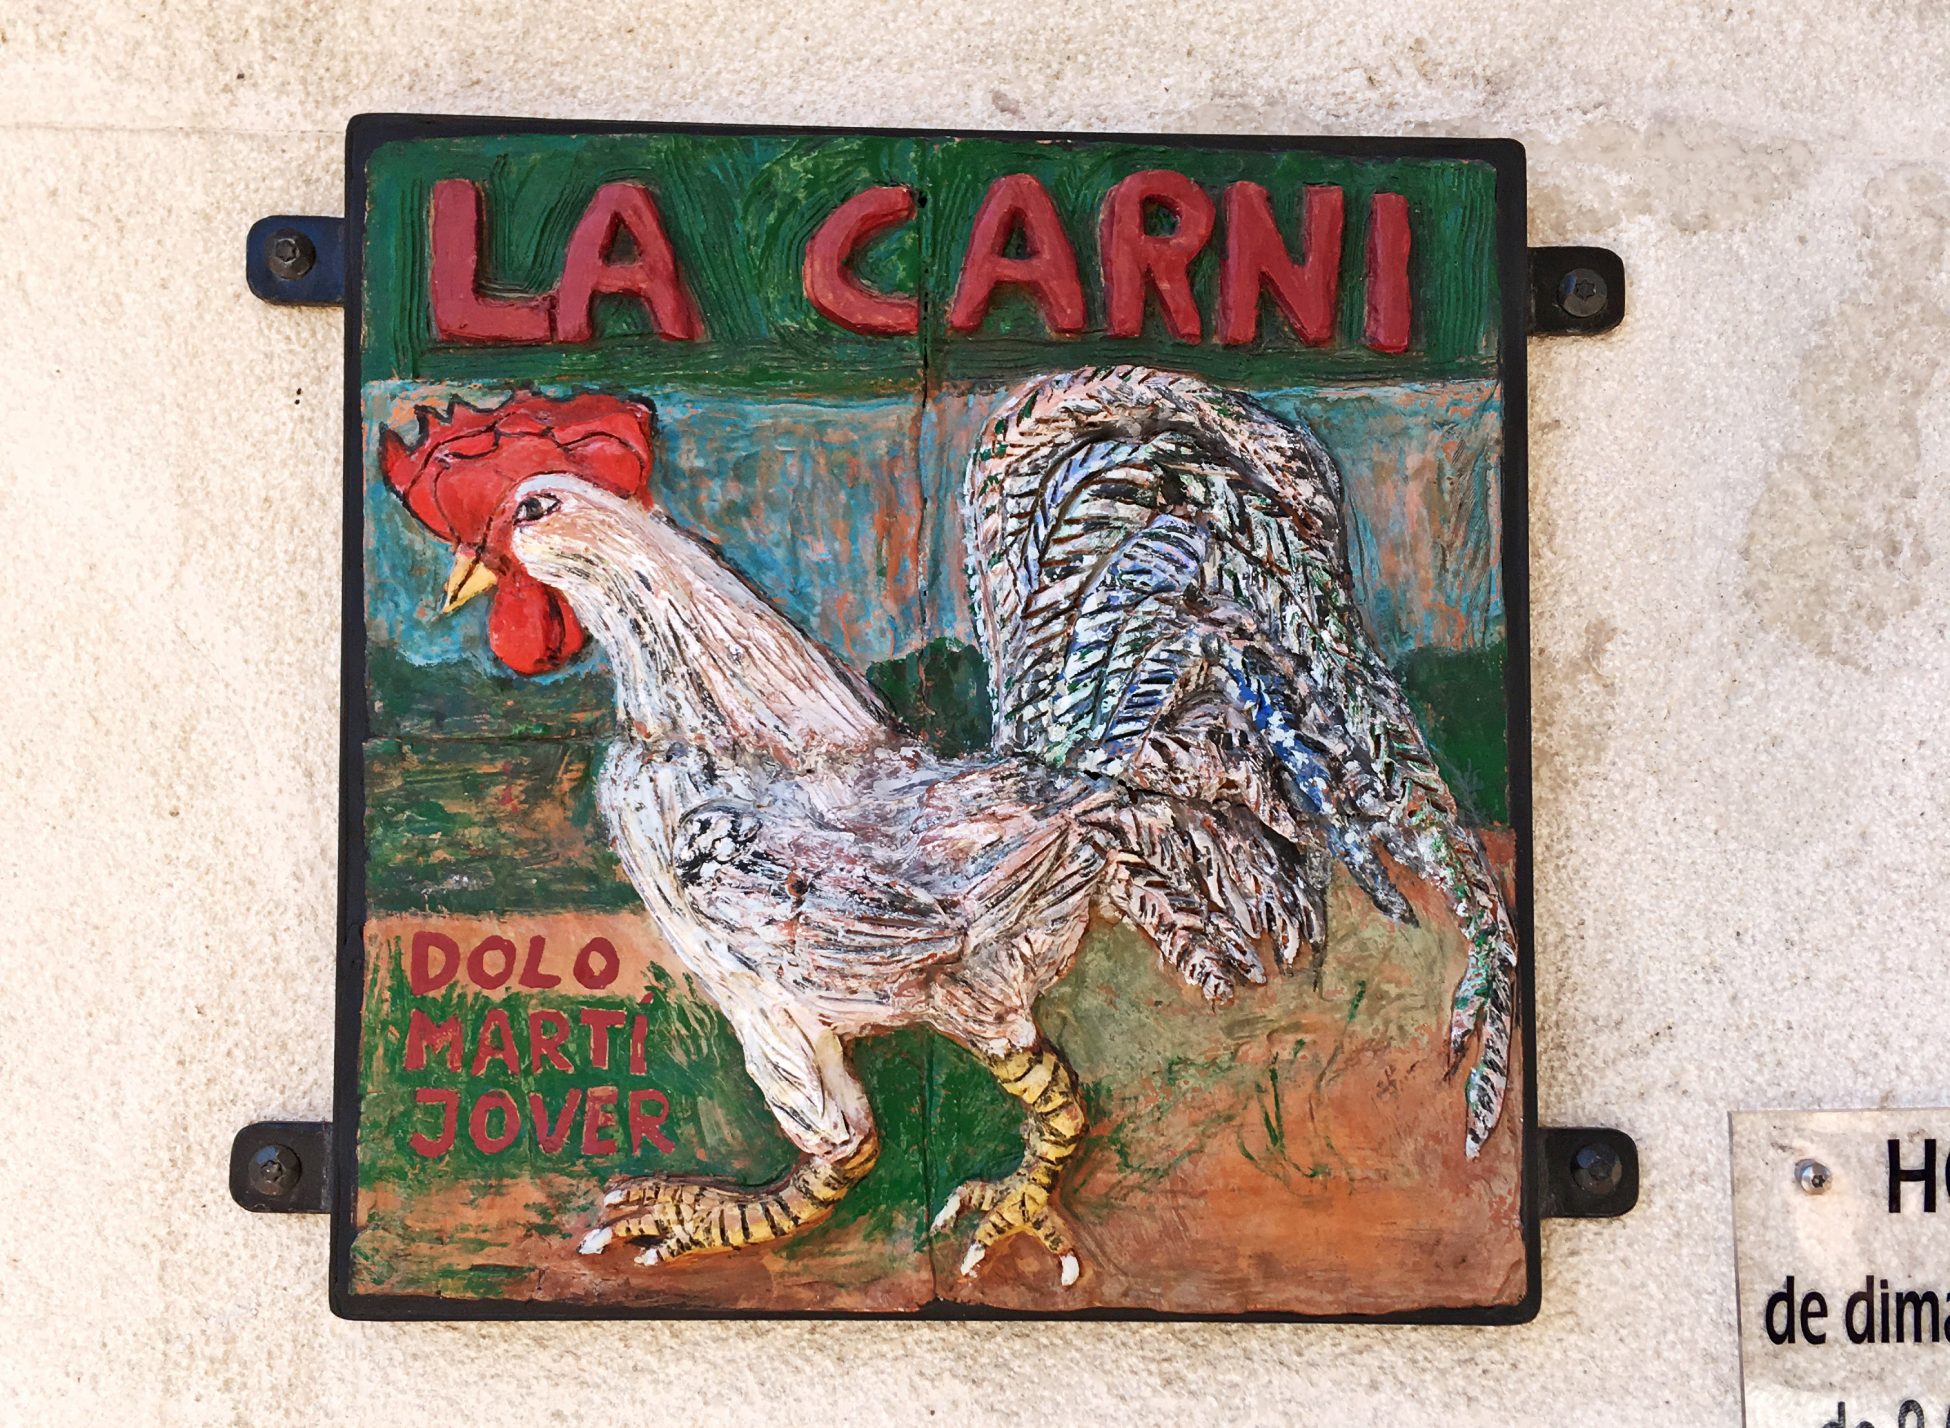 Ilustración de una gallina en un cartel artesanal de carnicería. Cocentaina.